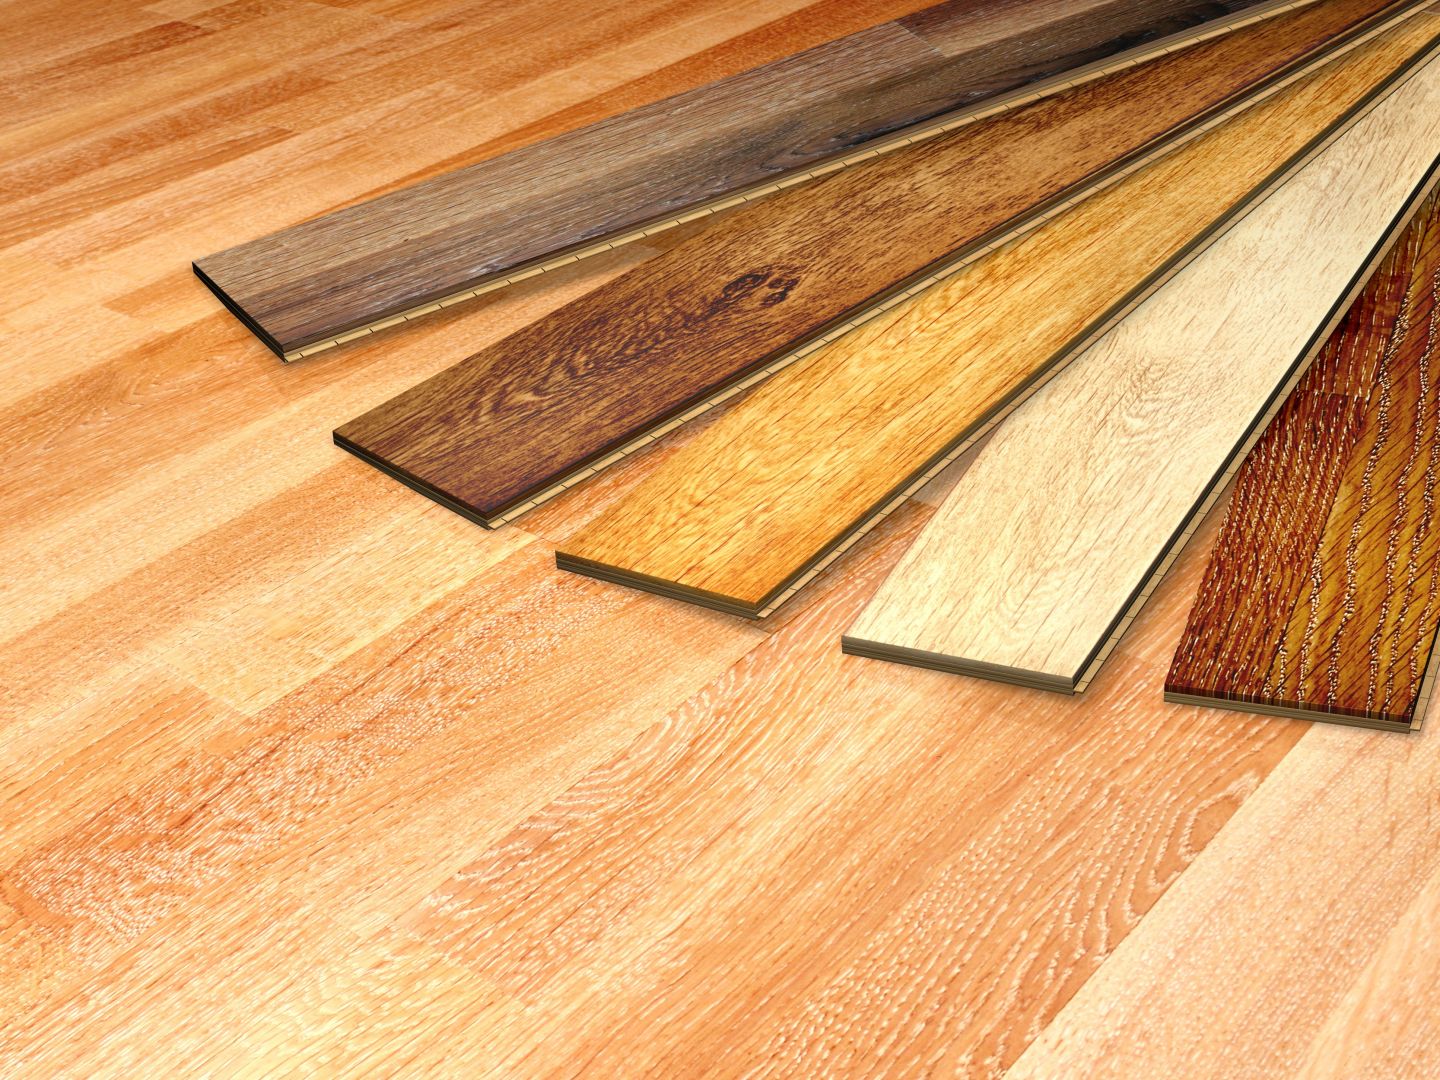 Dodávka a pokládka dřevěné podlahy v rodinném domě, 200 m2, Blansko